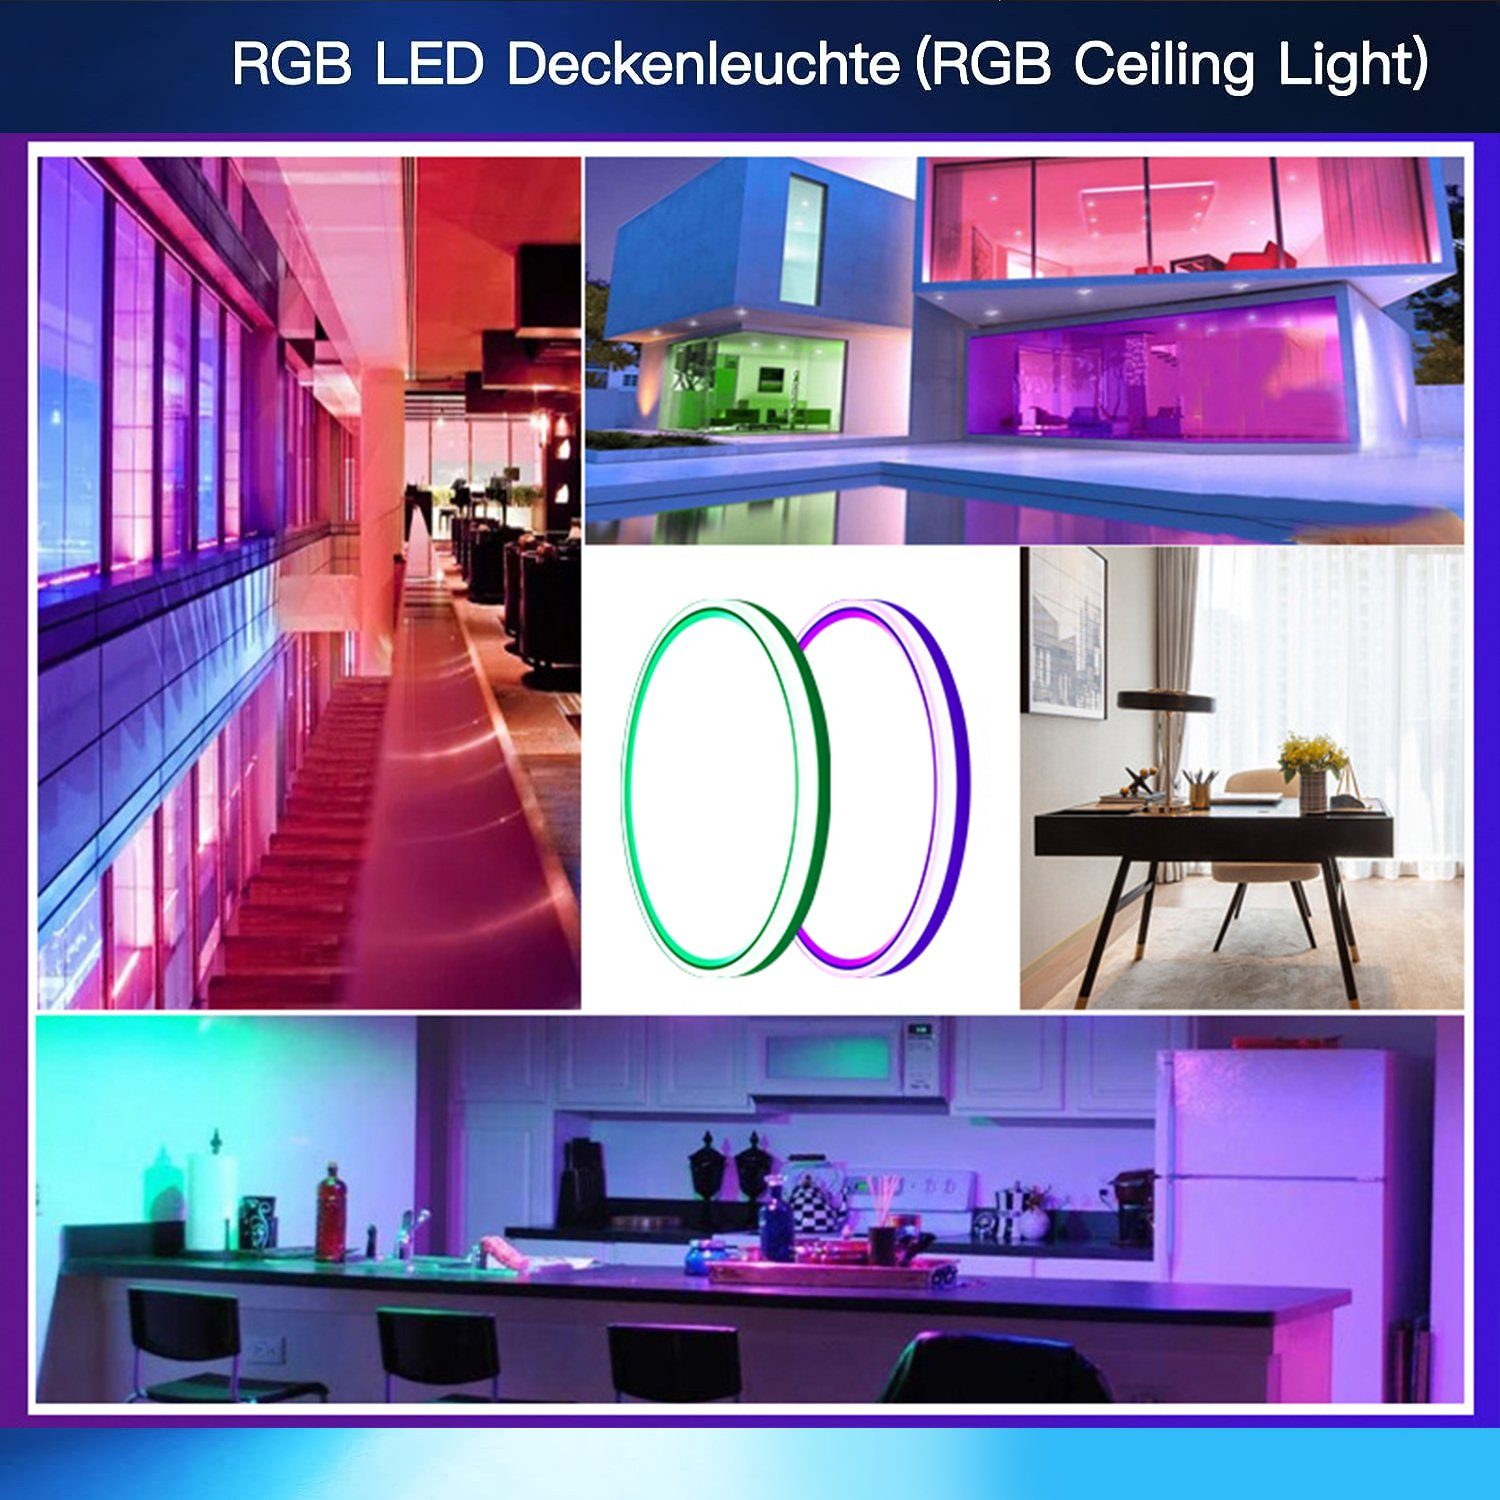 Deckenleuchte mit Led RGB Orte Urlaubsatmosphäre, 2000LM Farbwechsel LED 7 mit und Ø30cm Bedienungsanleitung,für RGB+Warmweiß+Neutralweiß+kaltweiß, Dimmbar deutscher 24W Deckenleuchte Fernbedienung, verschiedene Deckenlampe Dimmable IBETTER